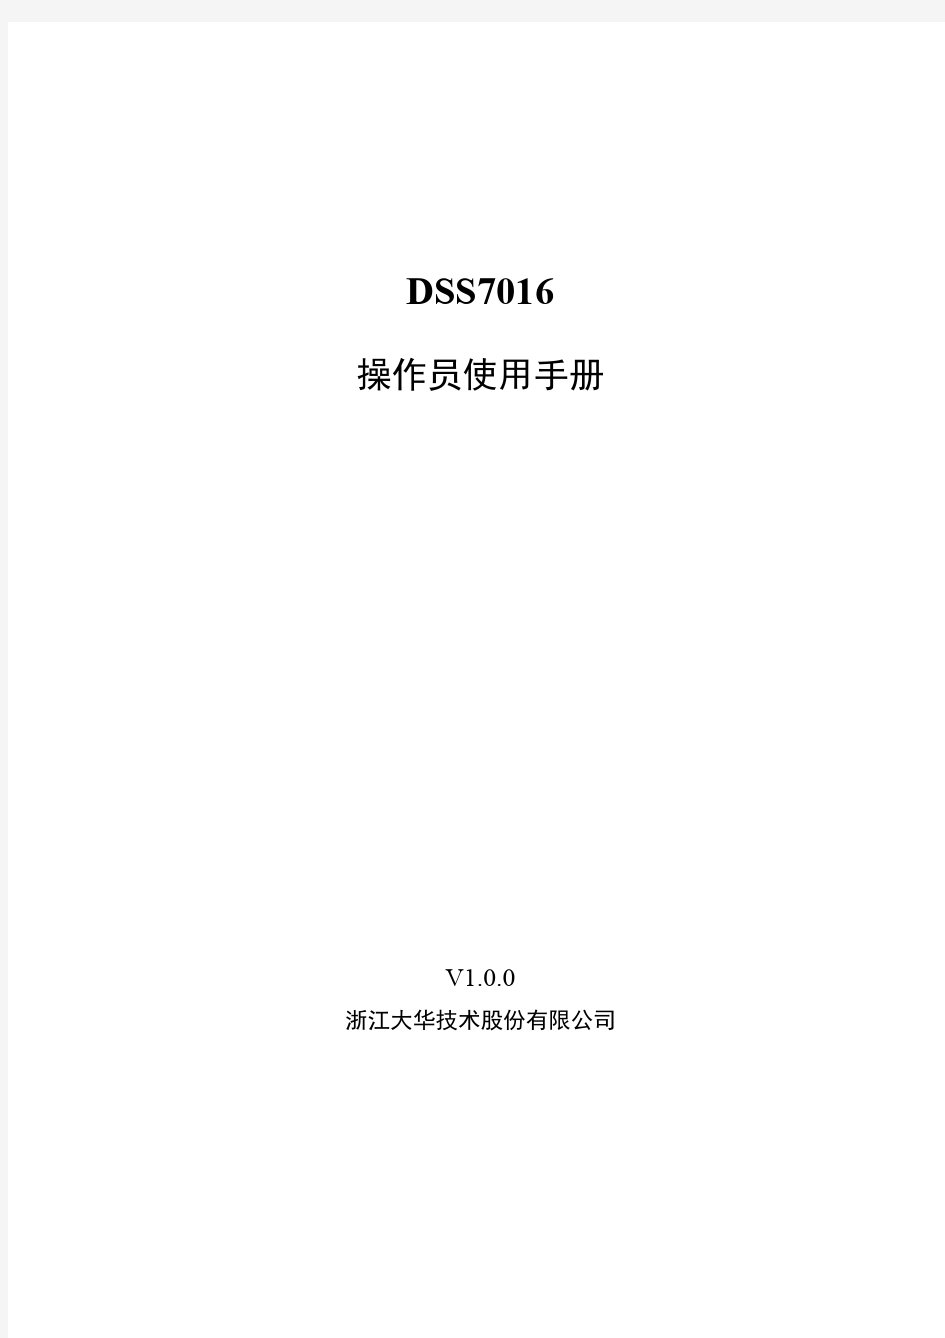 大华DSS7016_客户端操作手册